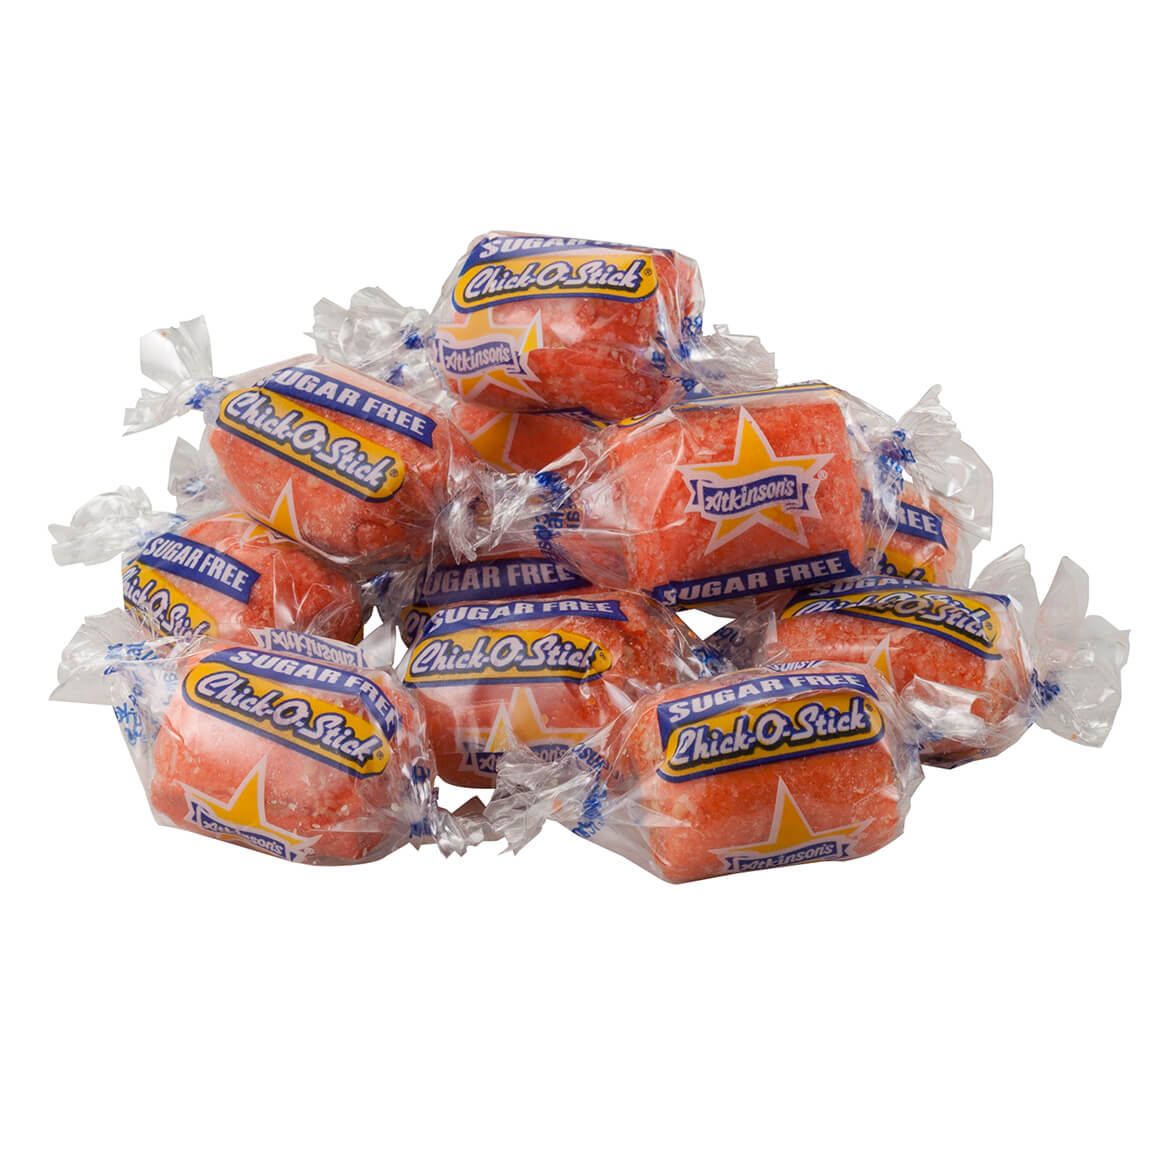 Sugar-Free Chick-O-Sticks, 3.75 oz. + '-' + 361389